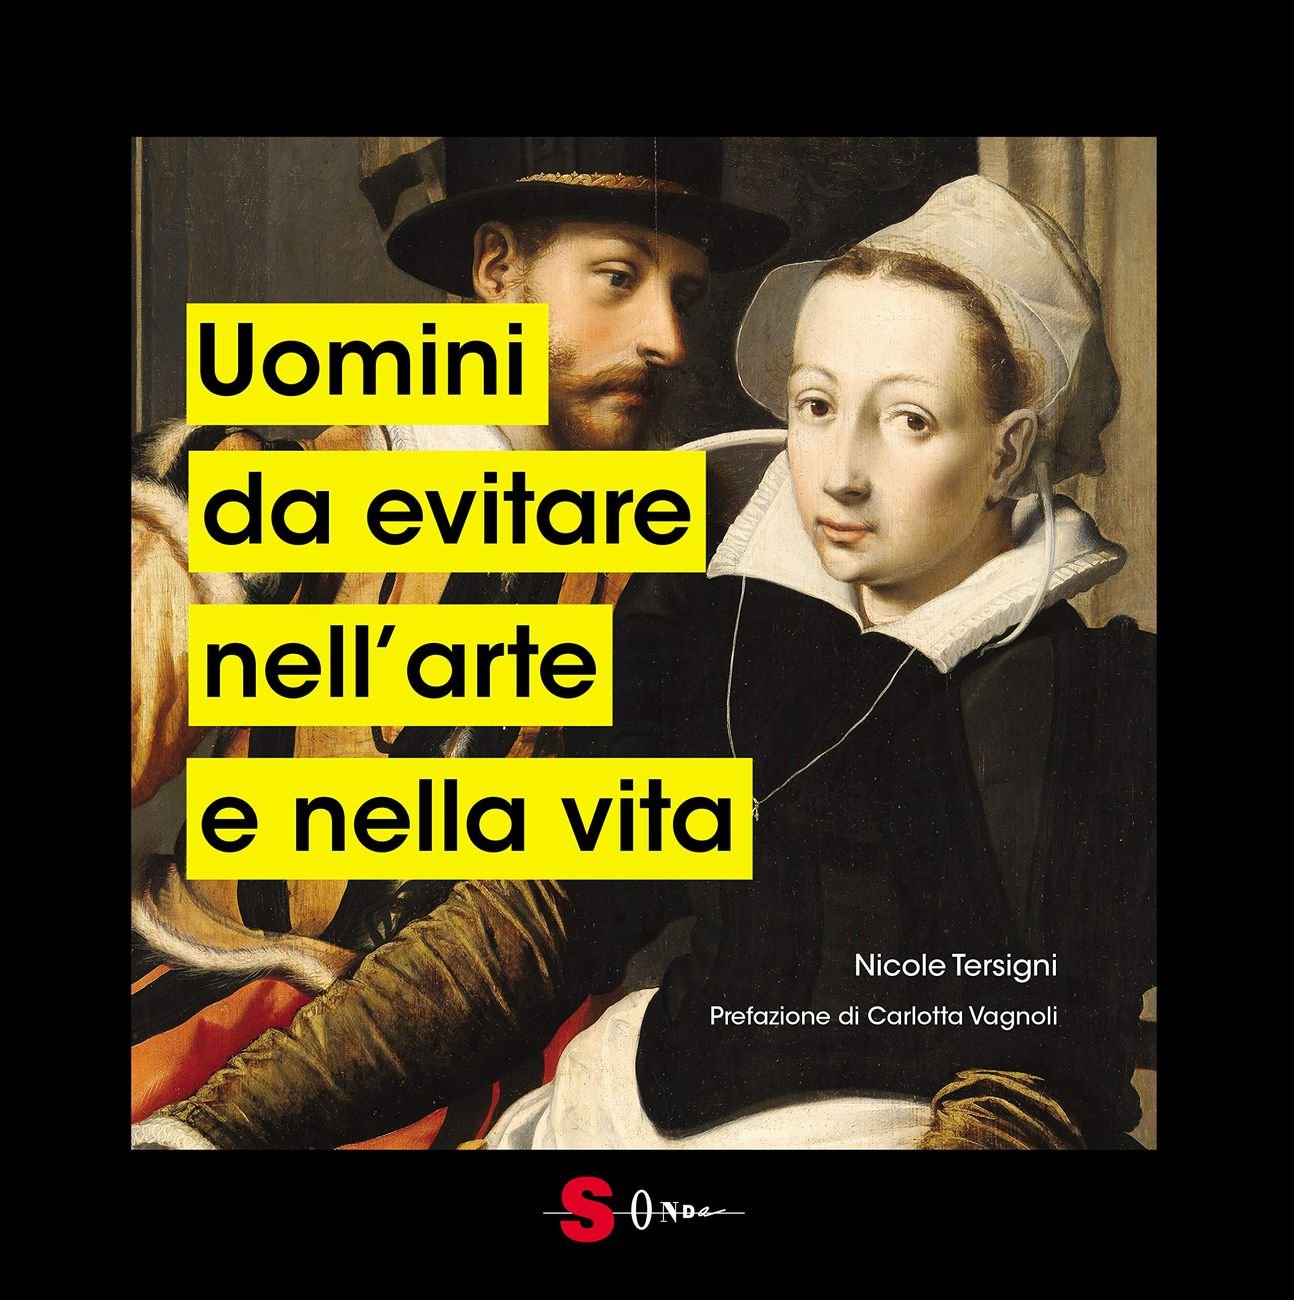 Nicole Tersigni – Uomini da evitare, nell’arte e nella vita (Sonda, Milano 2021)